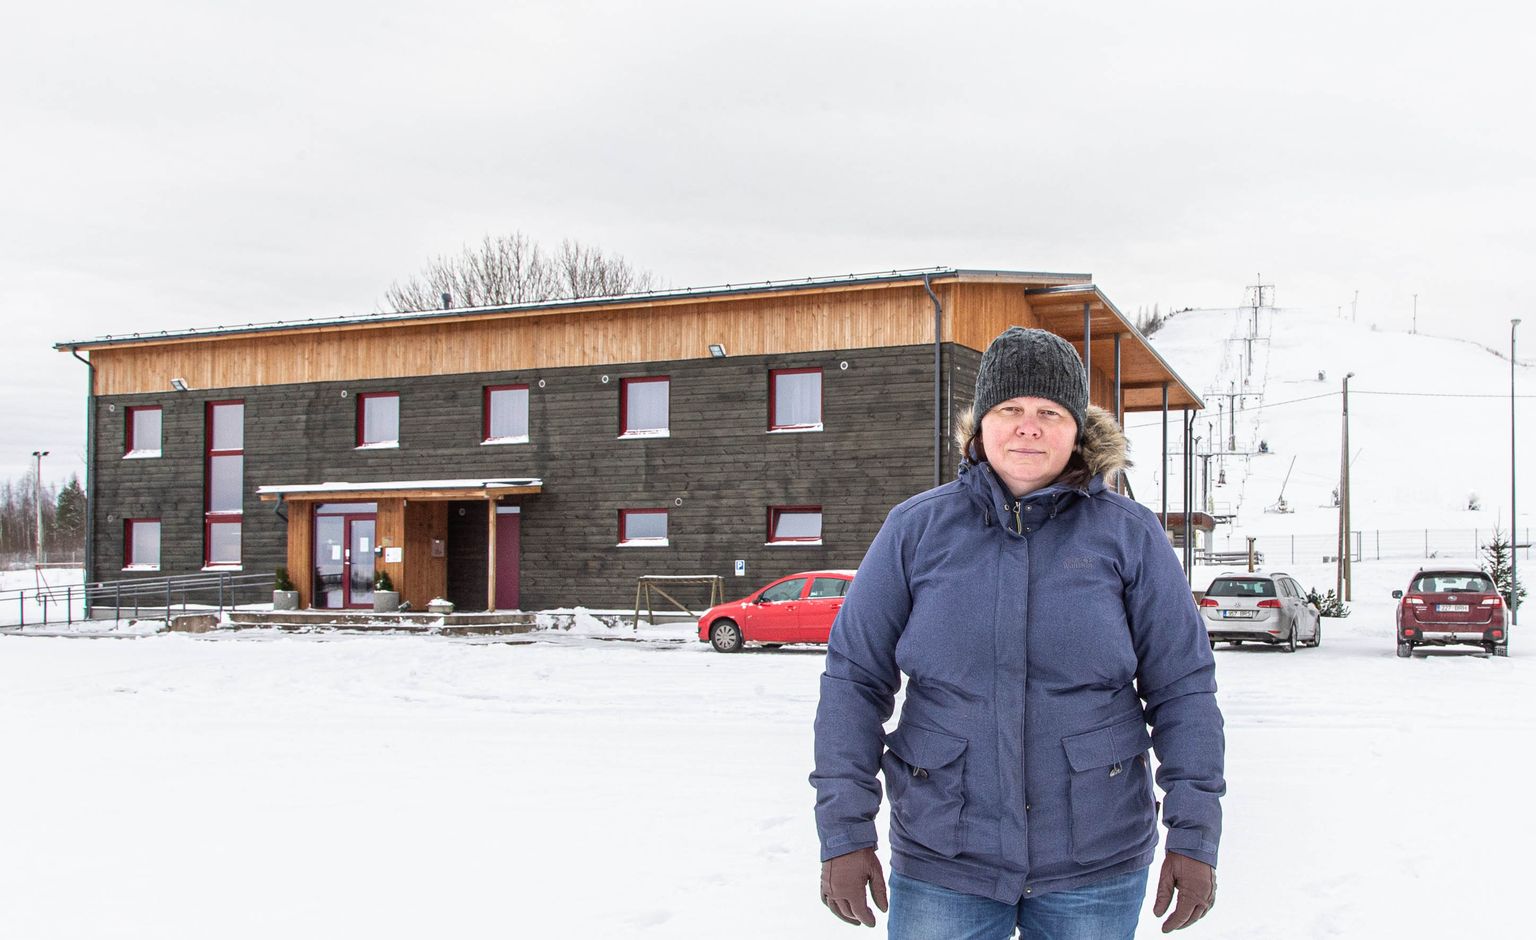 Кая Крейсман снова открыла хостел "Tuhamäe" сразу же 21 декабря, когда правительство освободило от запрета на размещение приезжающих по работе. С понедельника тут ждут всех желающих.